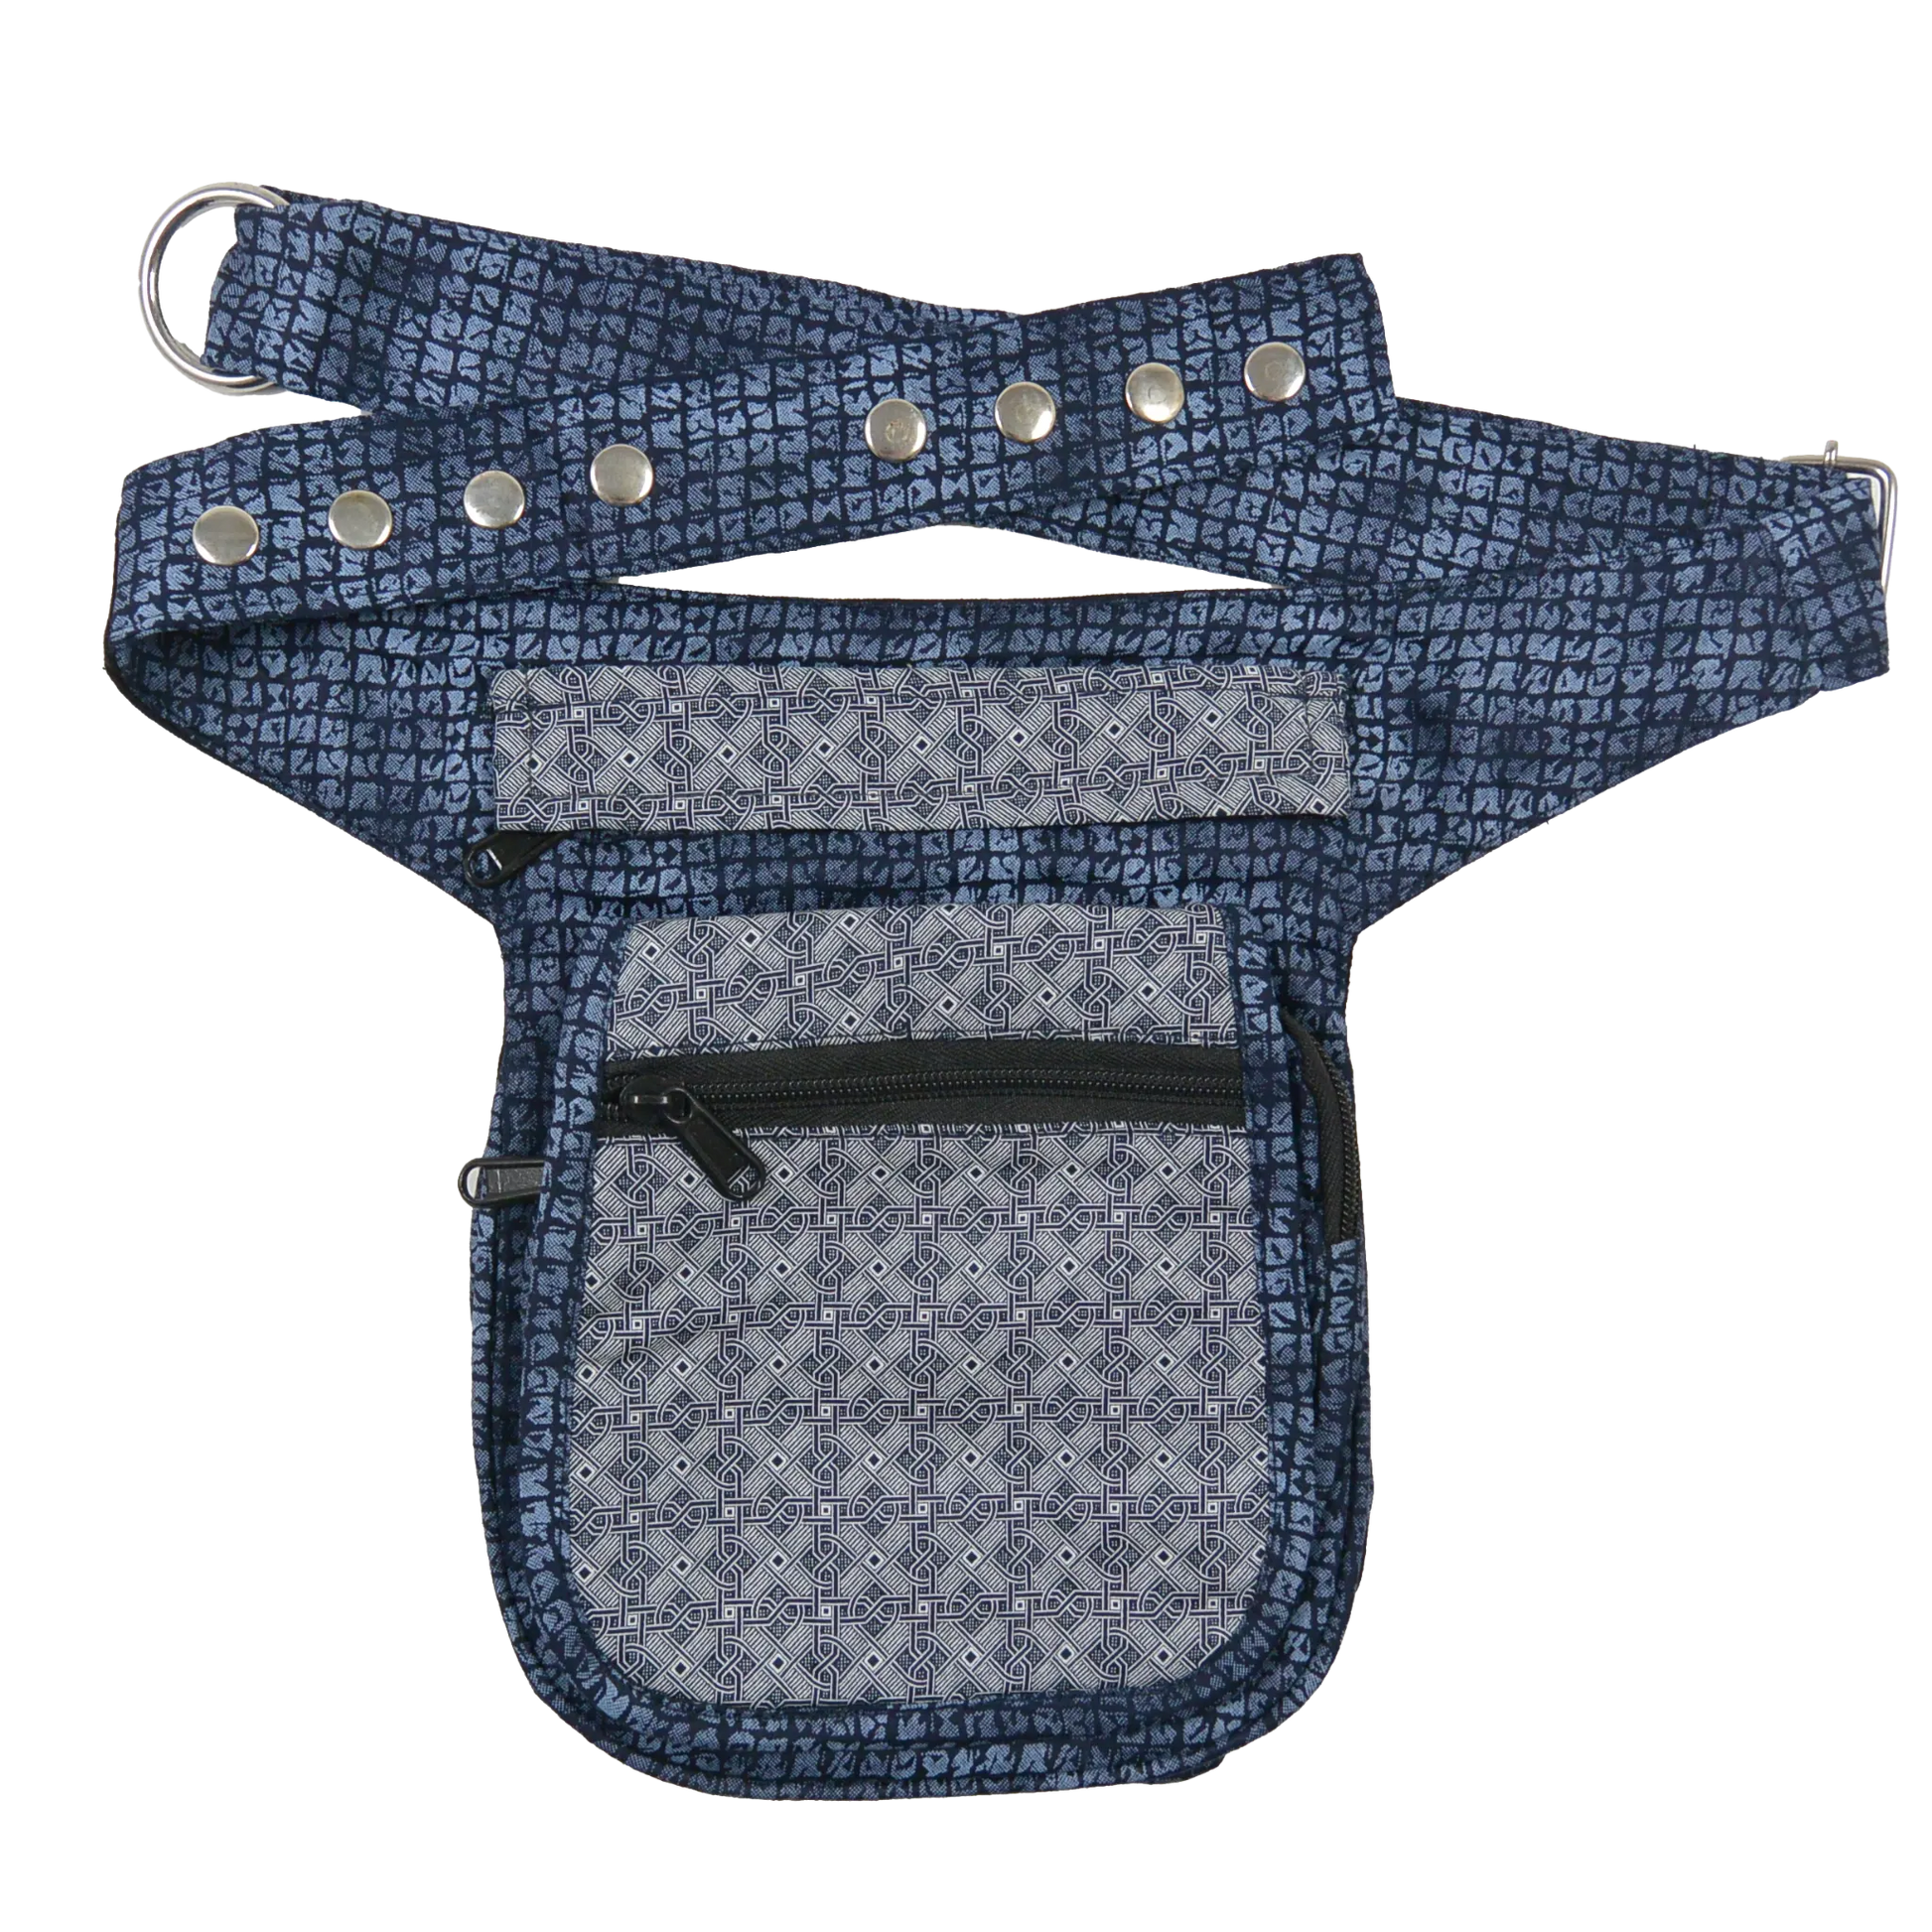 Bauchtasche Hüfttasche Stoff Baumwolle in Blau mit Muster Mix. 